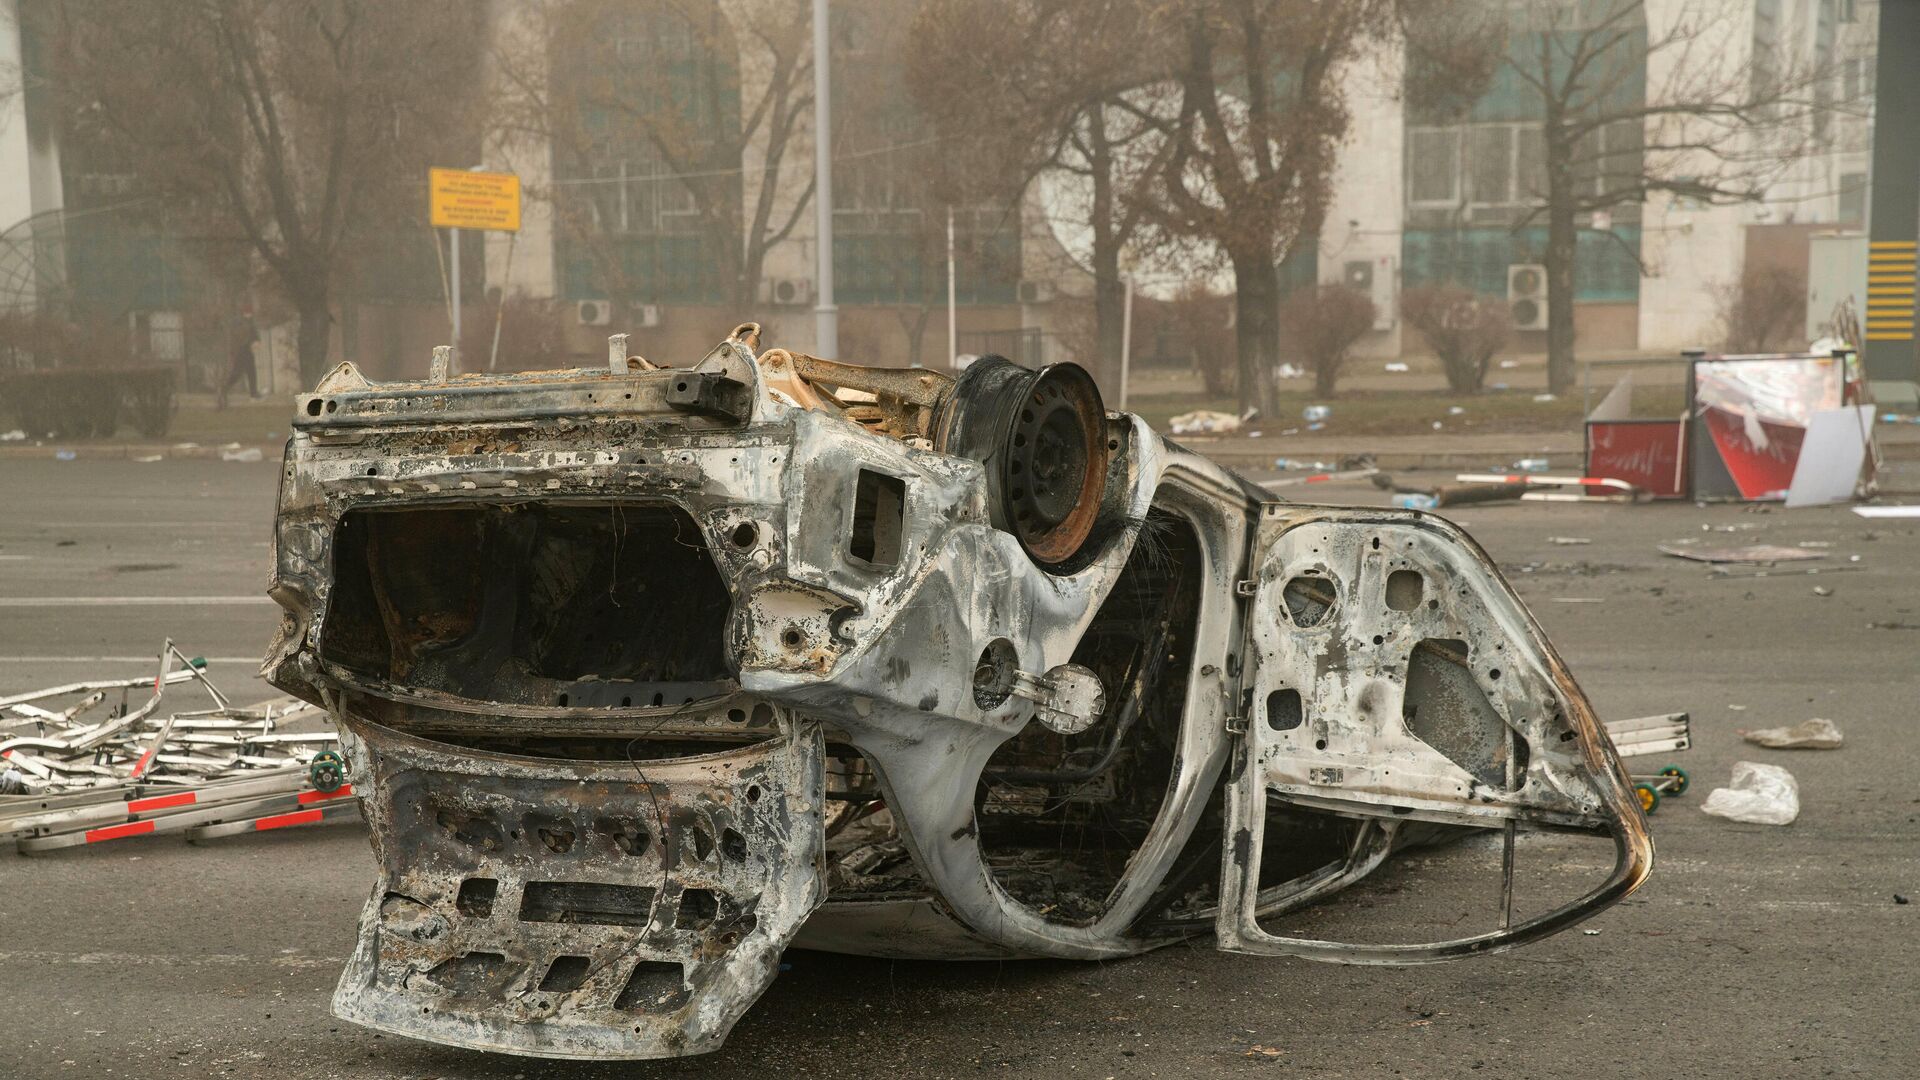 Сгоревший автомобиль в центре Алматы 6 января 2022 года - Sputnik Беларусь, 1920, 07.01.2022